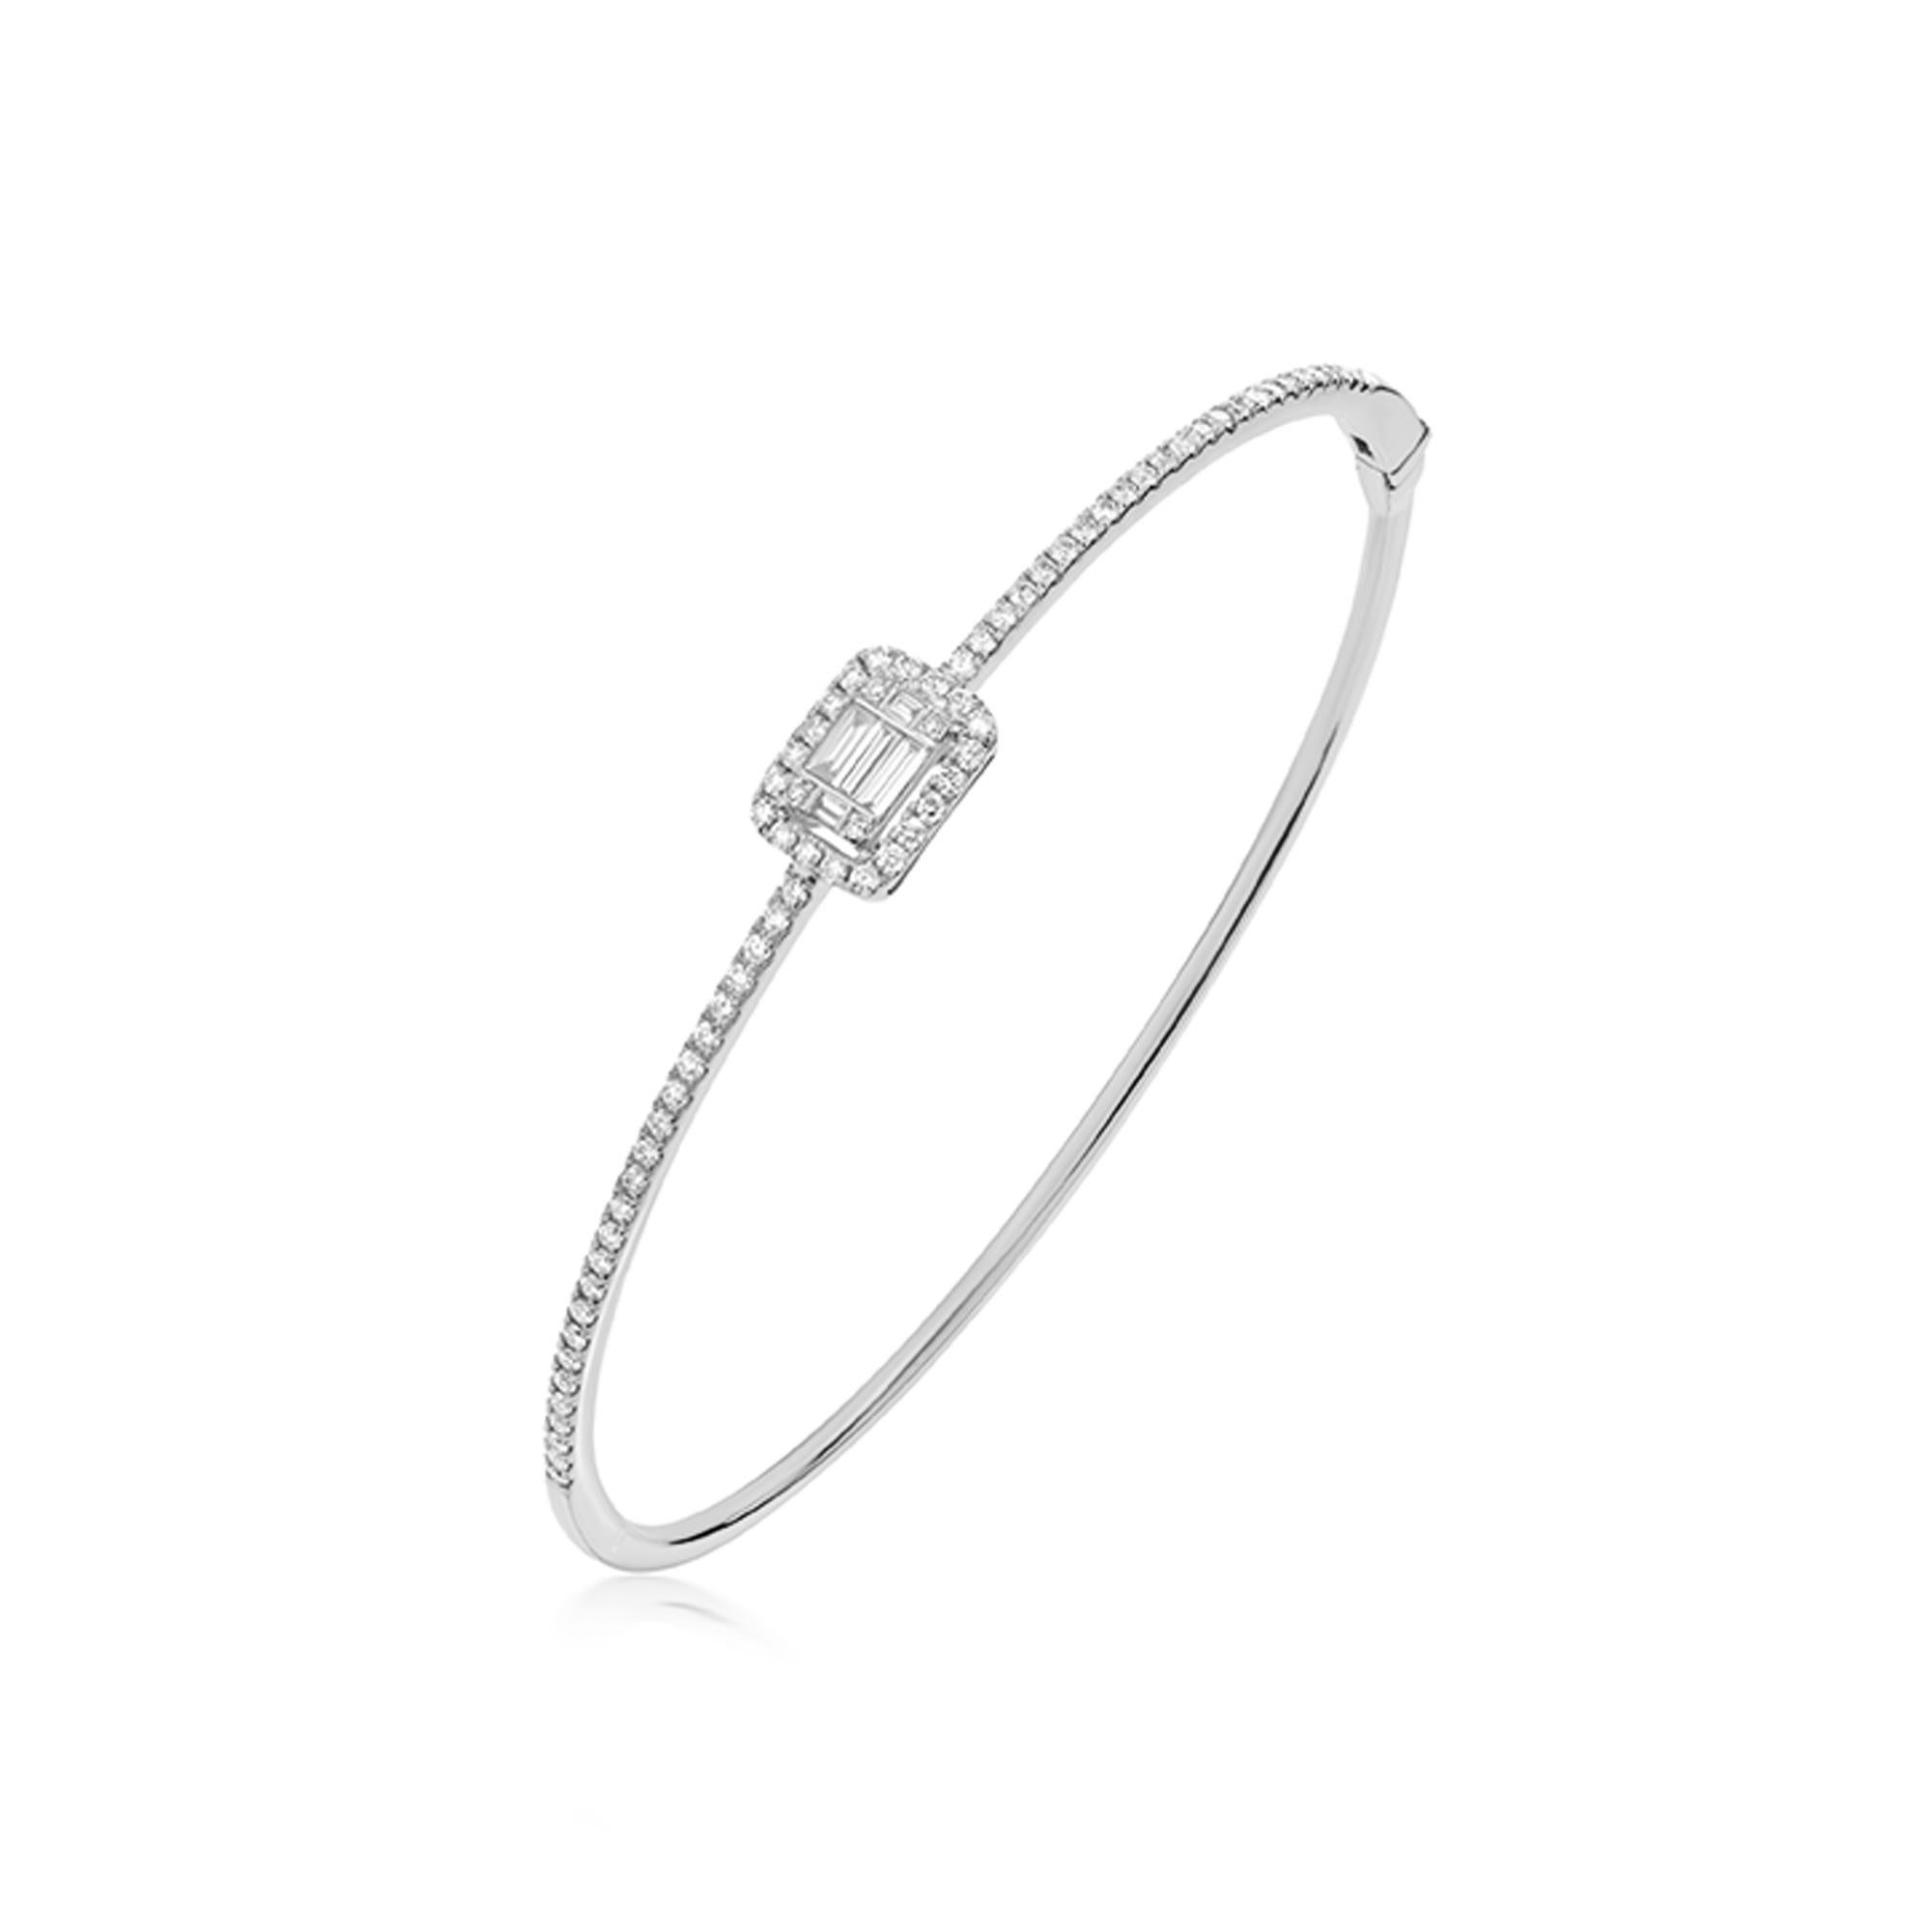 Des diamants blancs baguette et ronds de taille normale rehaussent le quotient glam de ce bracelet élégant, serti en micro pavé et en serti illusion. Les diamants sont de pureté SI1 et de couleur GH, et pèsent 0,66 carat. Éblouissez-vous et touchez